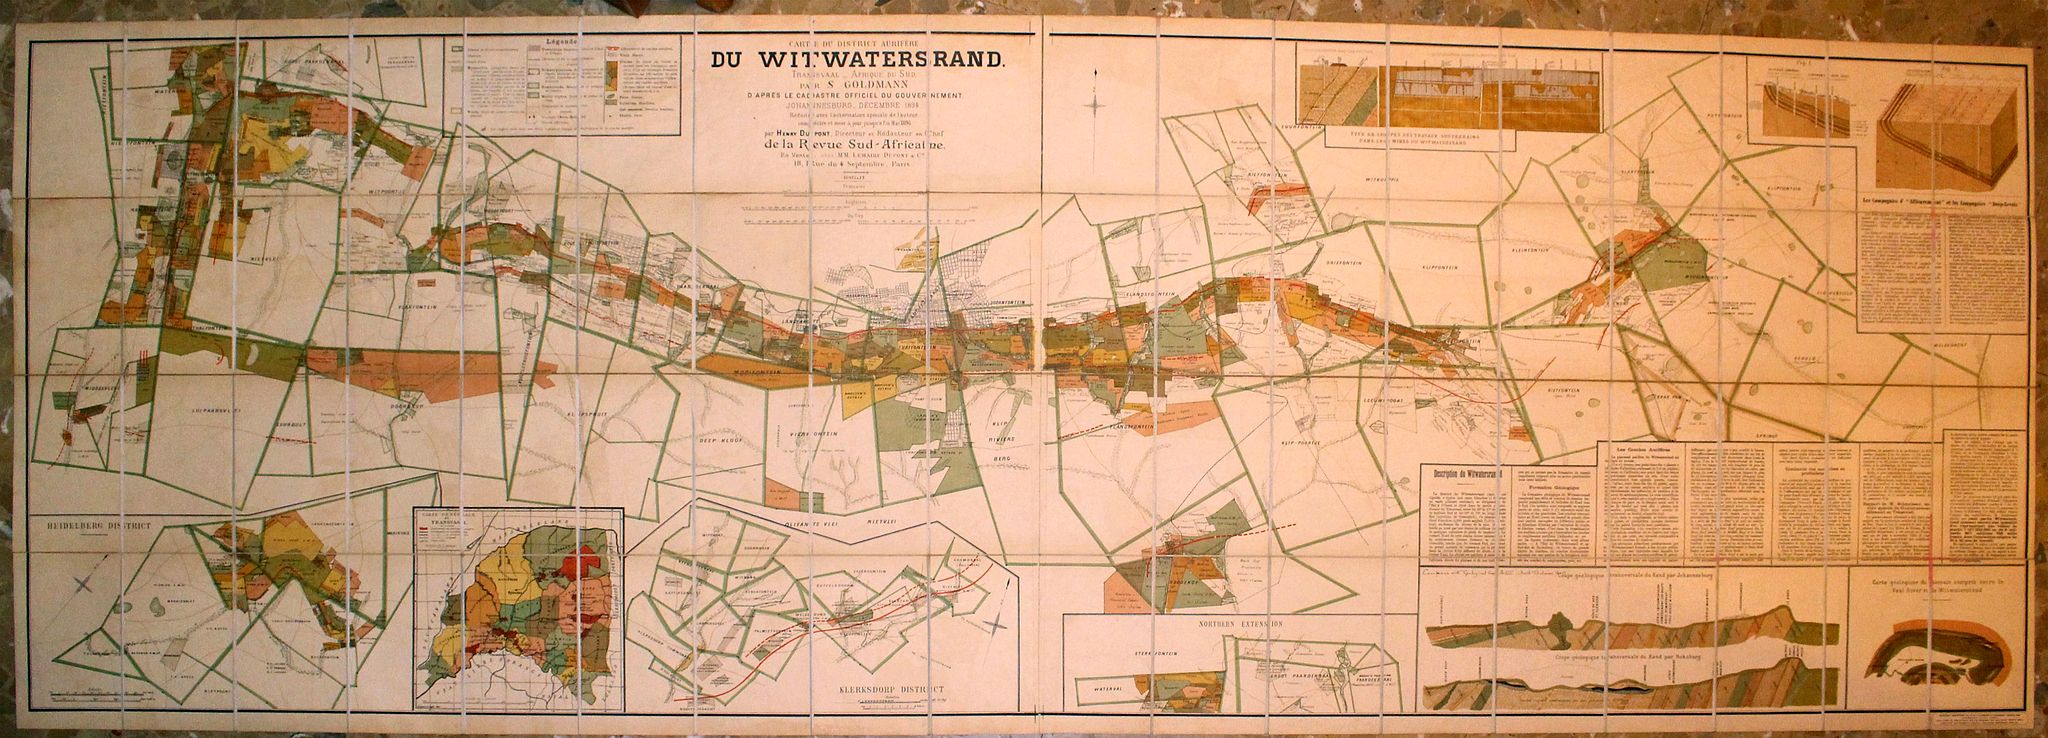 Carte du District Aurifere du Witwatersrand Transvaal (Afrique du Sud) par S. Goldmann d'apres le Cadastre Officiel du Gouvernement